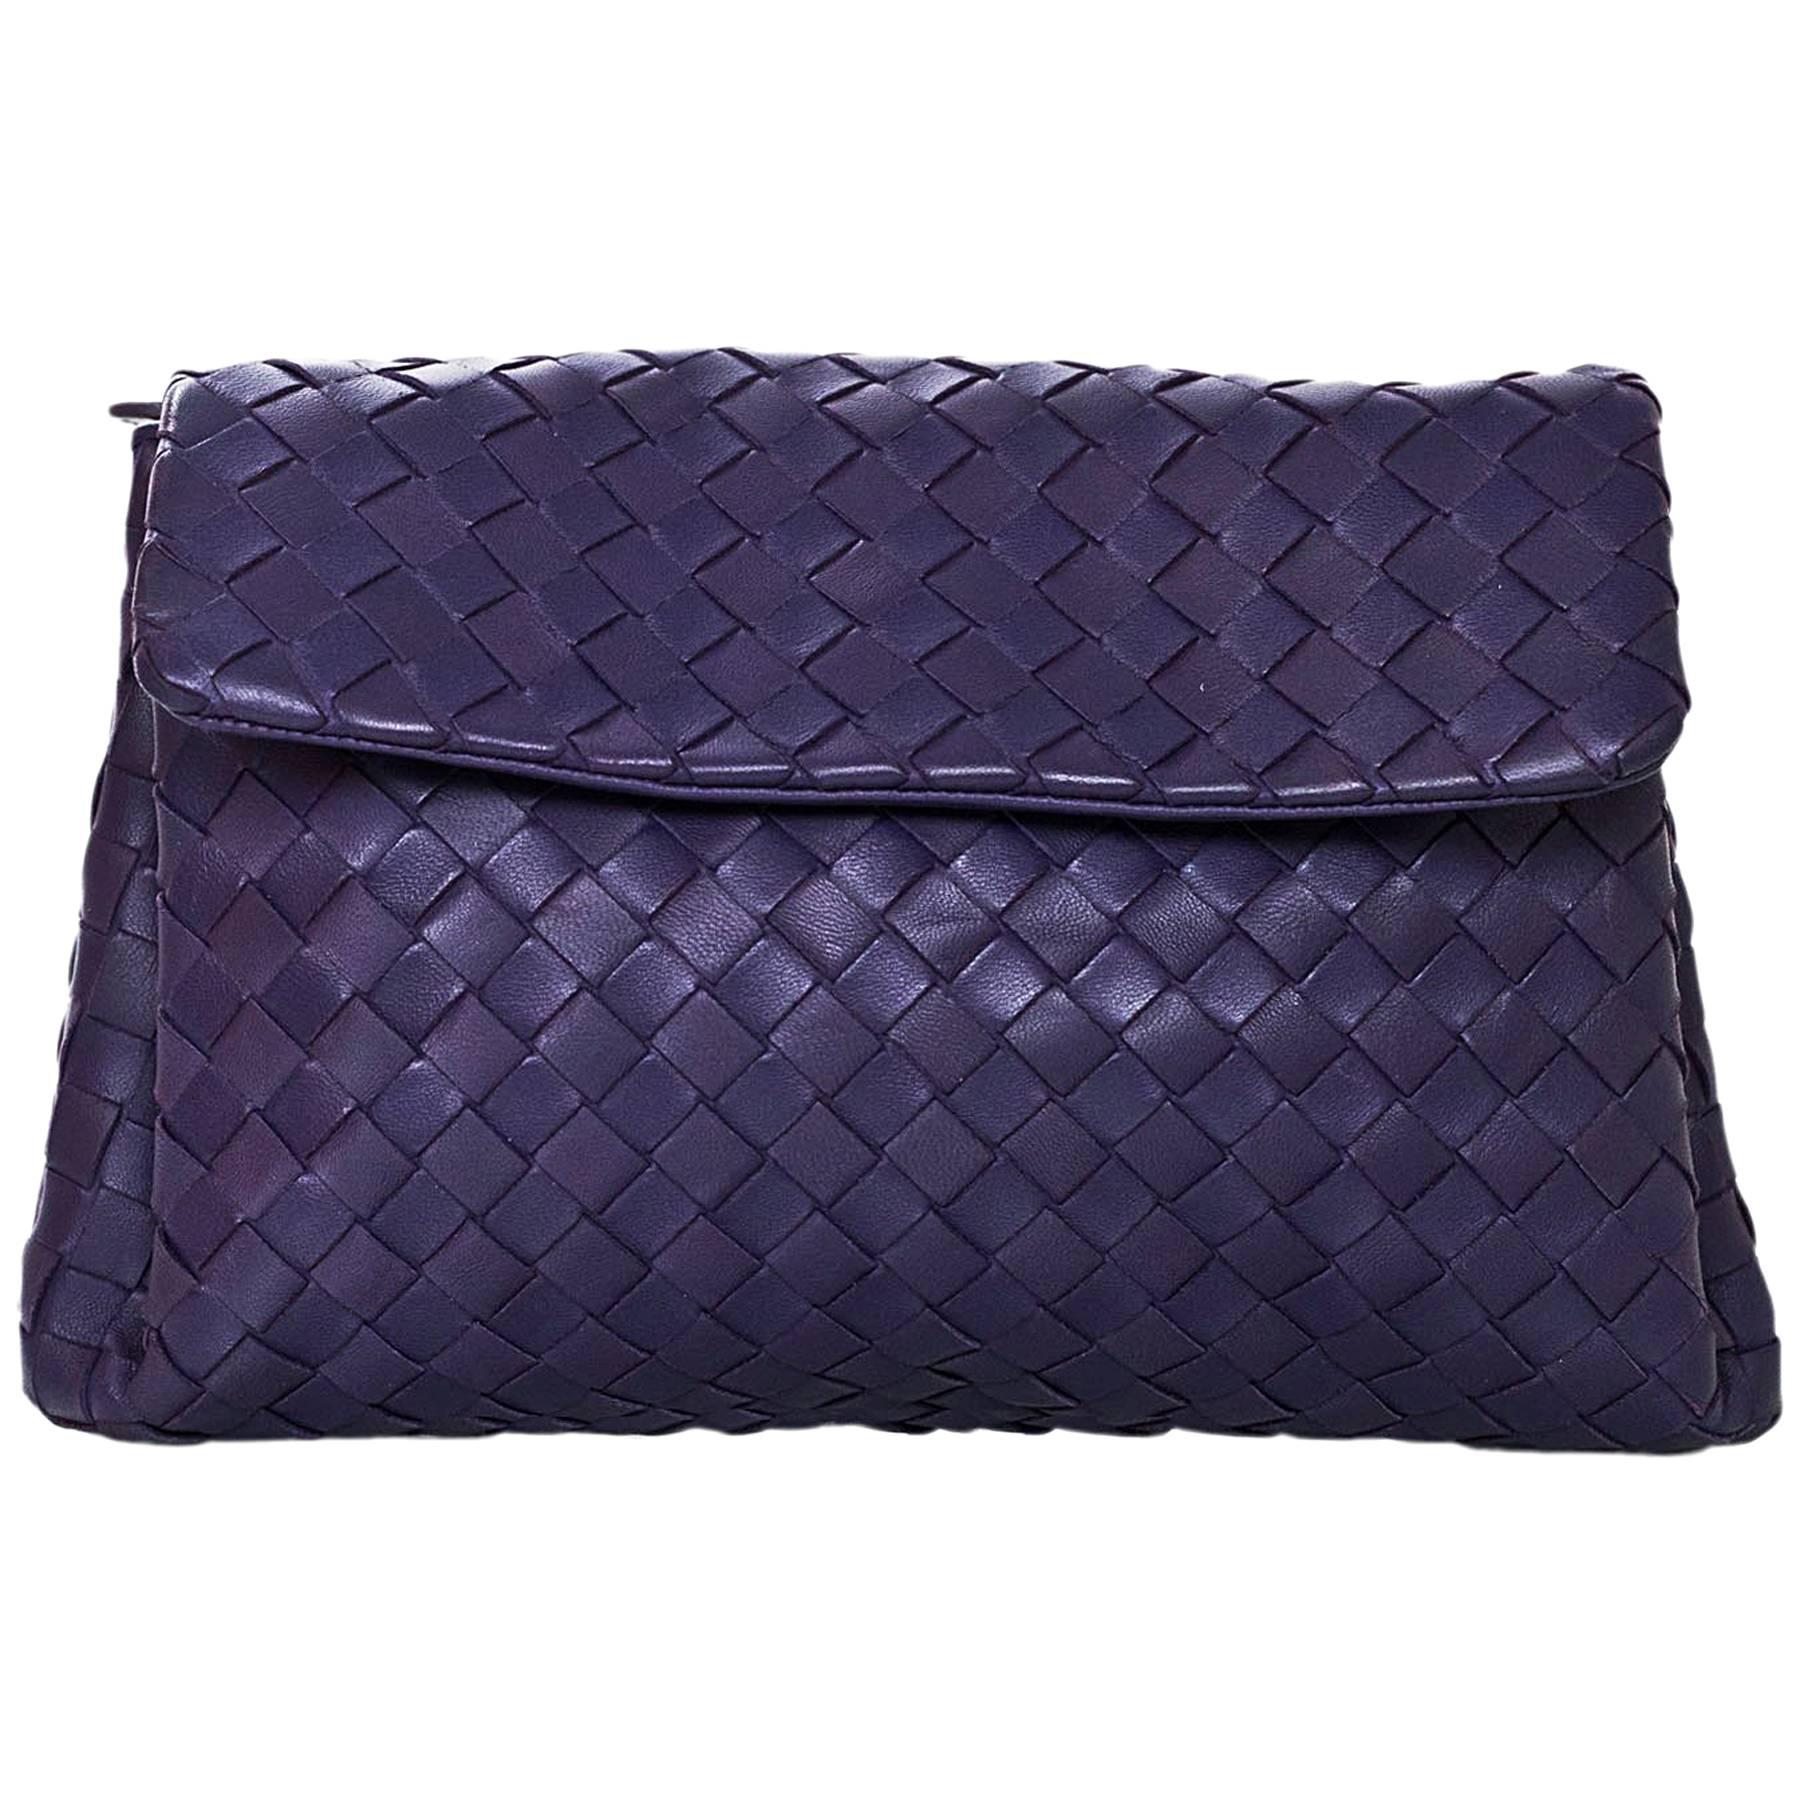 Bottega Veneta Purple Intrecciato Leather Clutch/Pouch Bag